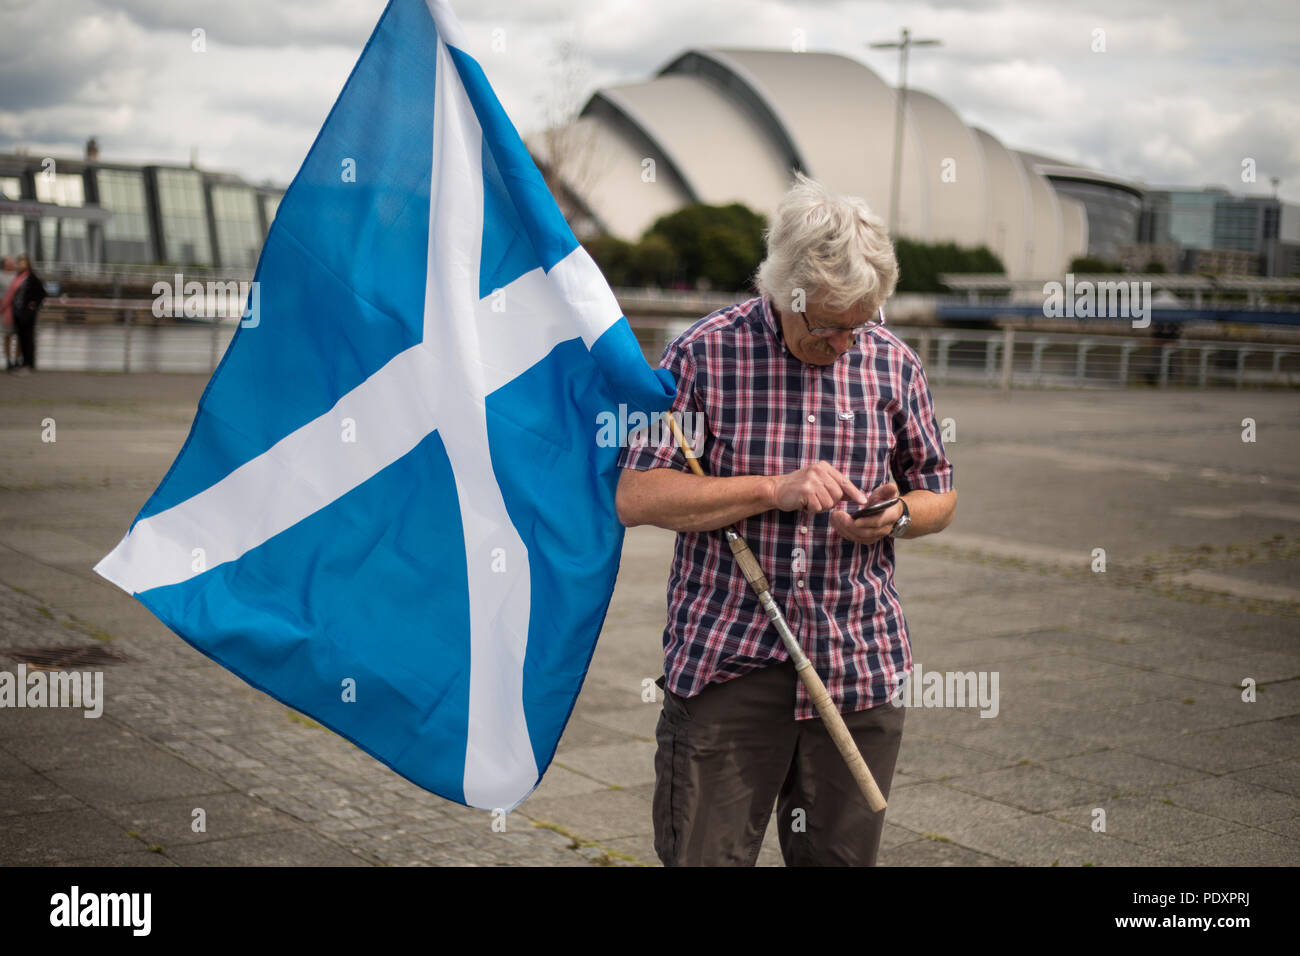 Glasgow, Schottland, am 11. August 2018. Pro-Scottish Unabhängigkeit Anhänger protestieren gegen eine wahrgenommene Vorurteile der BBC gegen Schottland und die pro-schottischen indpendence Bewegung. Etwa 300 Menschen nahmen an den Protesten außerhalb der BBC bei Pacific Quay, in Glasgow, Schottland. Bild: Jeremy Sutton-Hibbert / alamy Nachrichten. Stockfoto